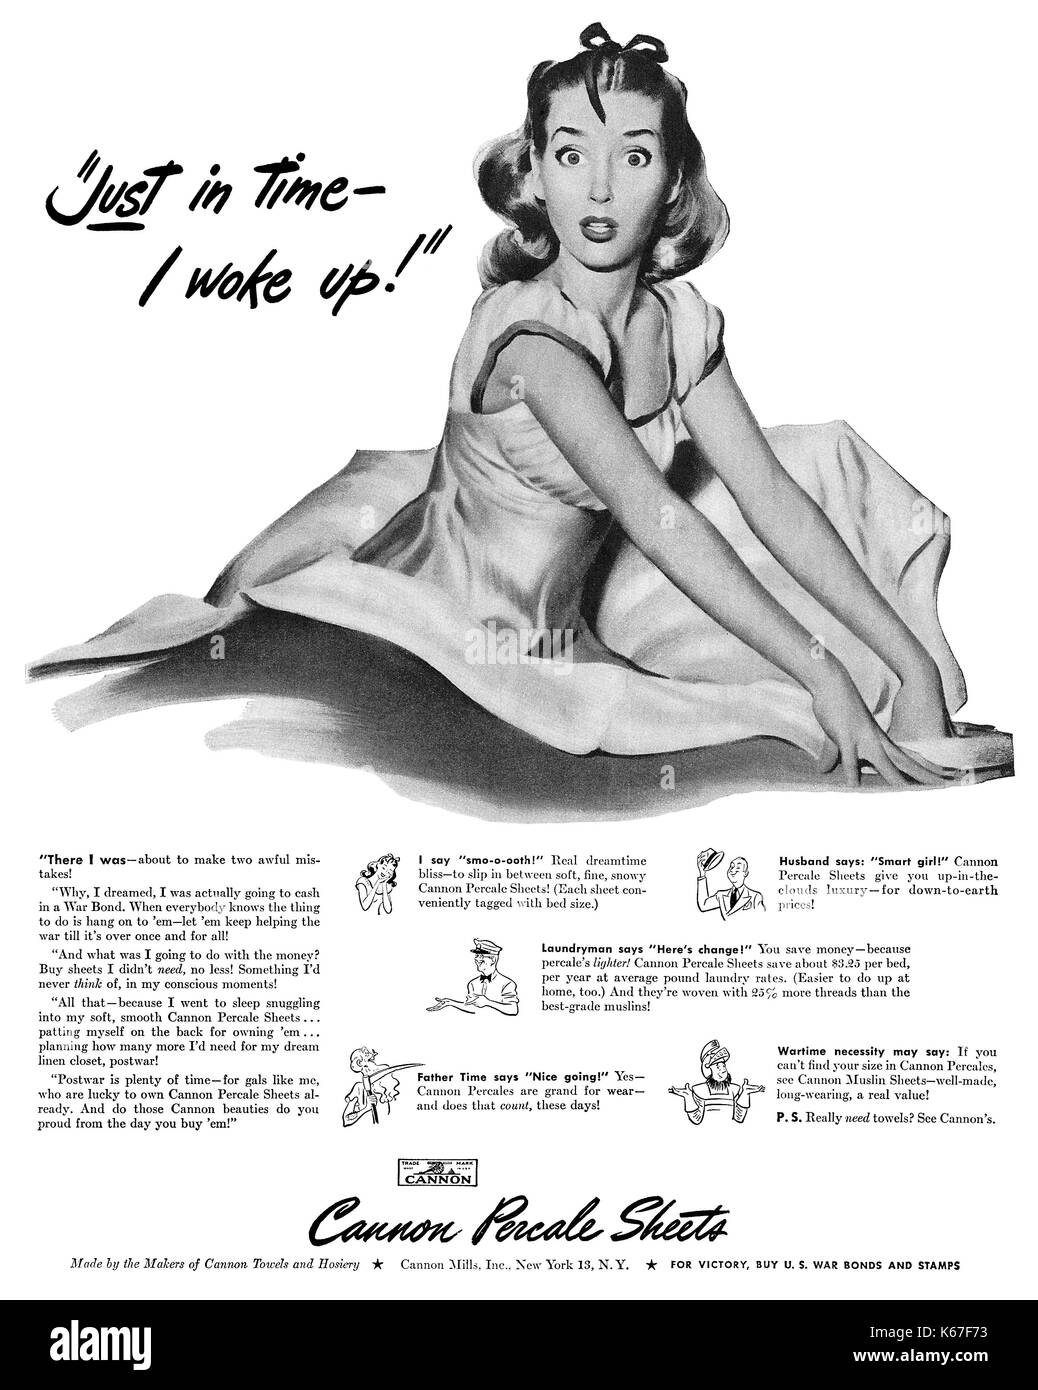 1945 pubblicità negli Stati Uniti per il cannone percalle fogli. Foto Stock